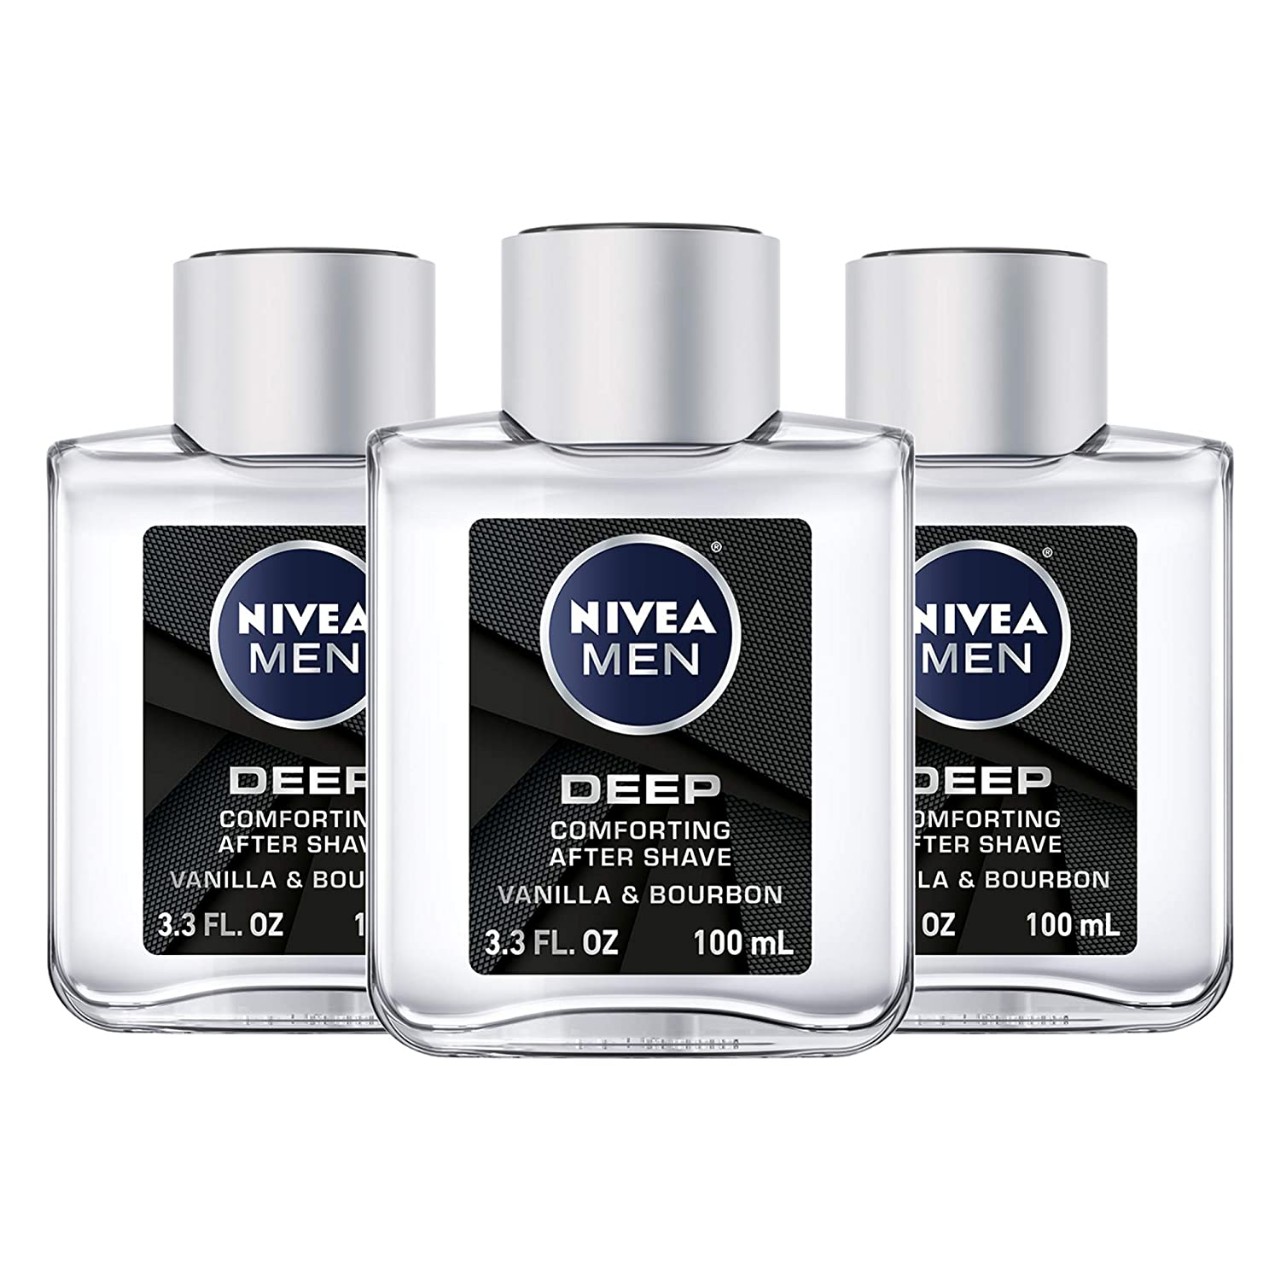 NIVEA Men DEEP Comfort Post Shave Lotion - Soothe Shave irritation - 3.3 fl. oz. Bottle (Pack of 3)